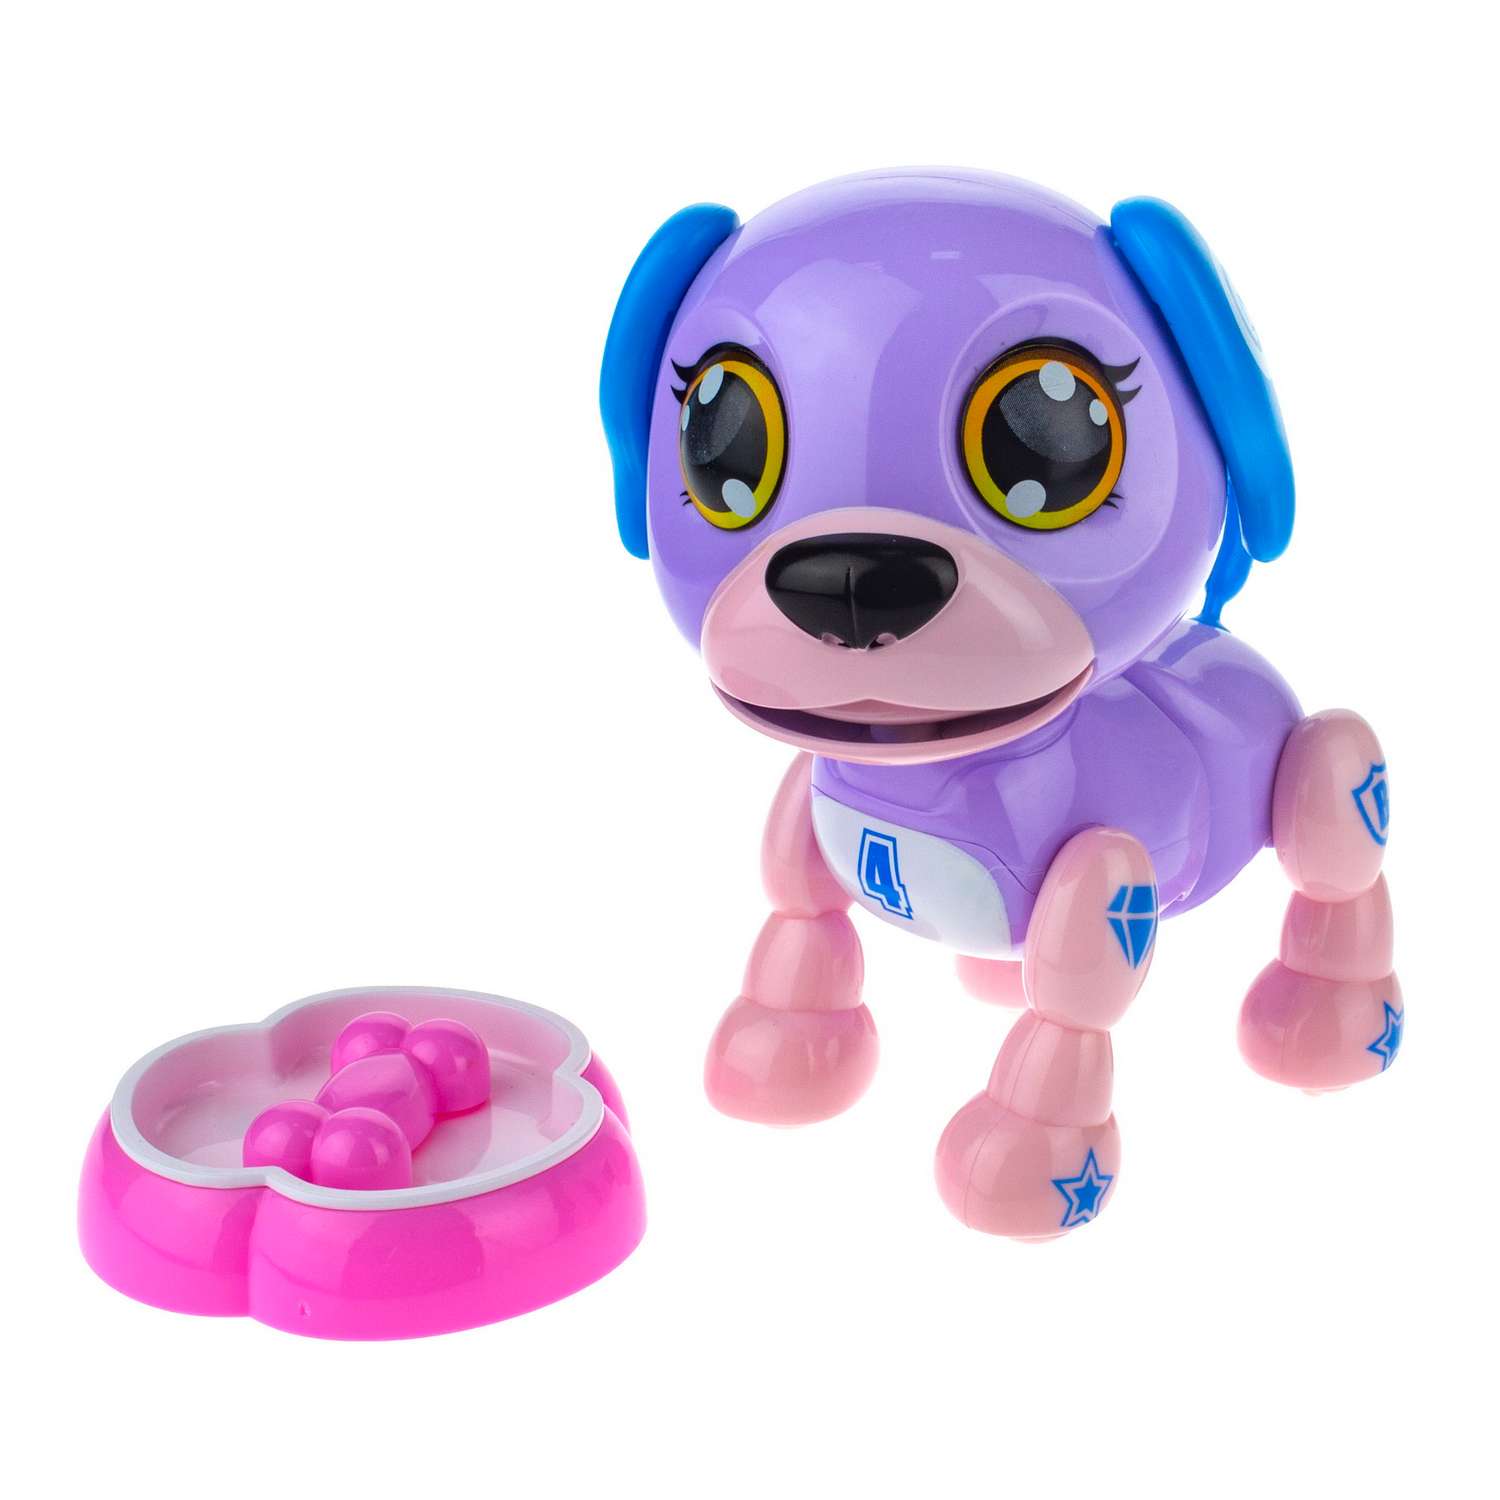 Интерактивная игрушка Robo Pets робо-щенок светло-фиолетовый - фото 2